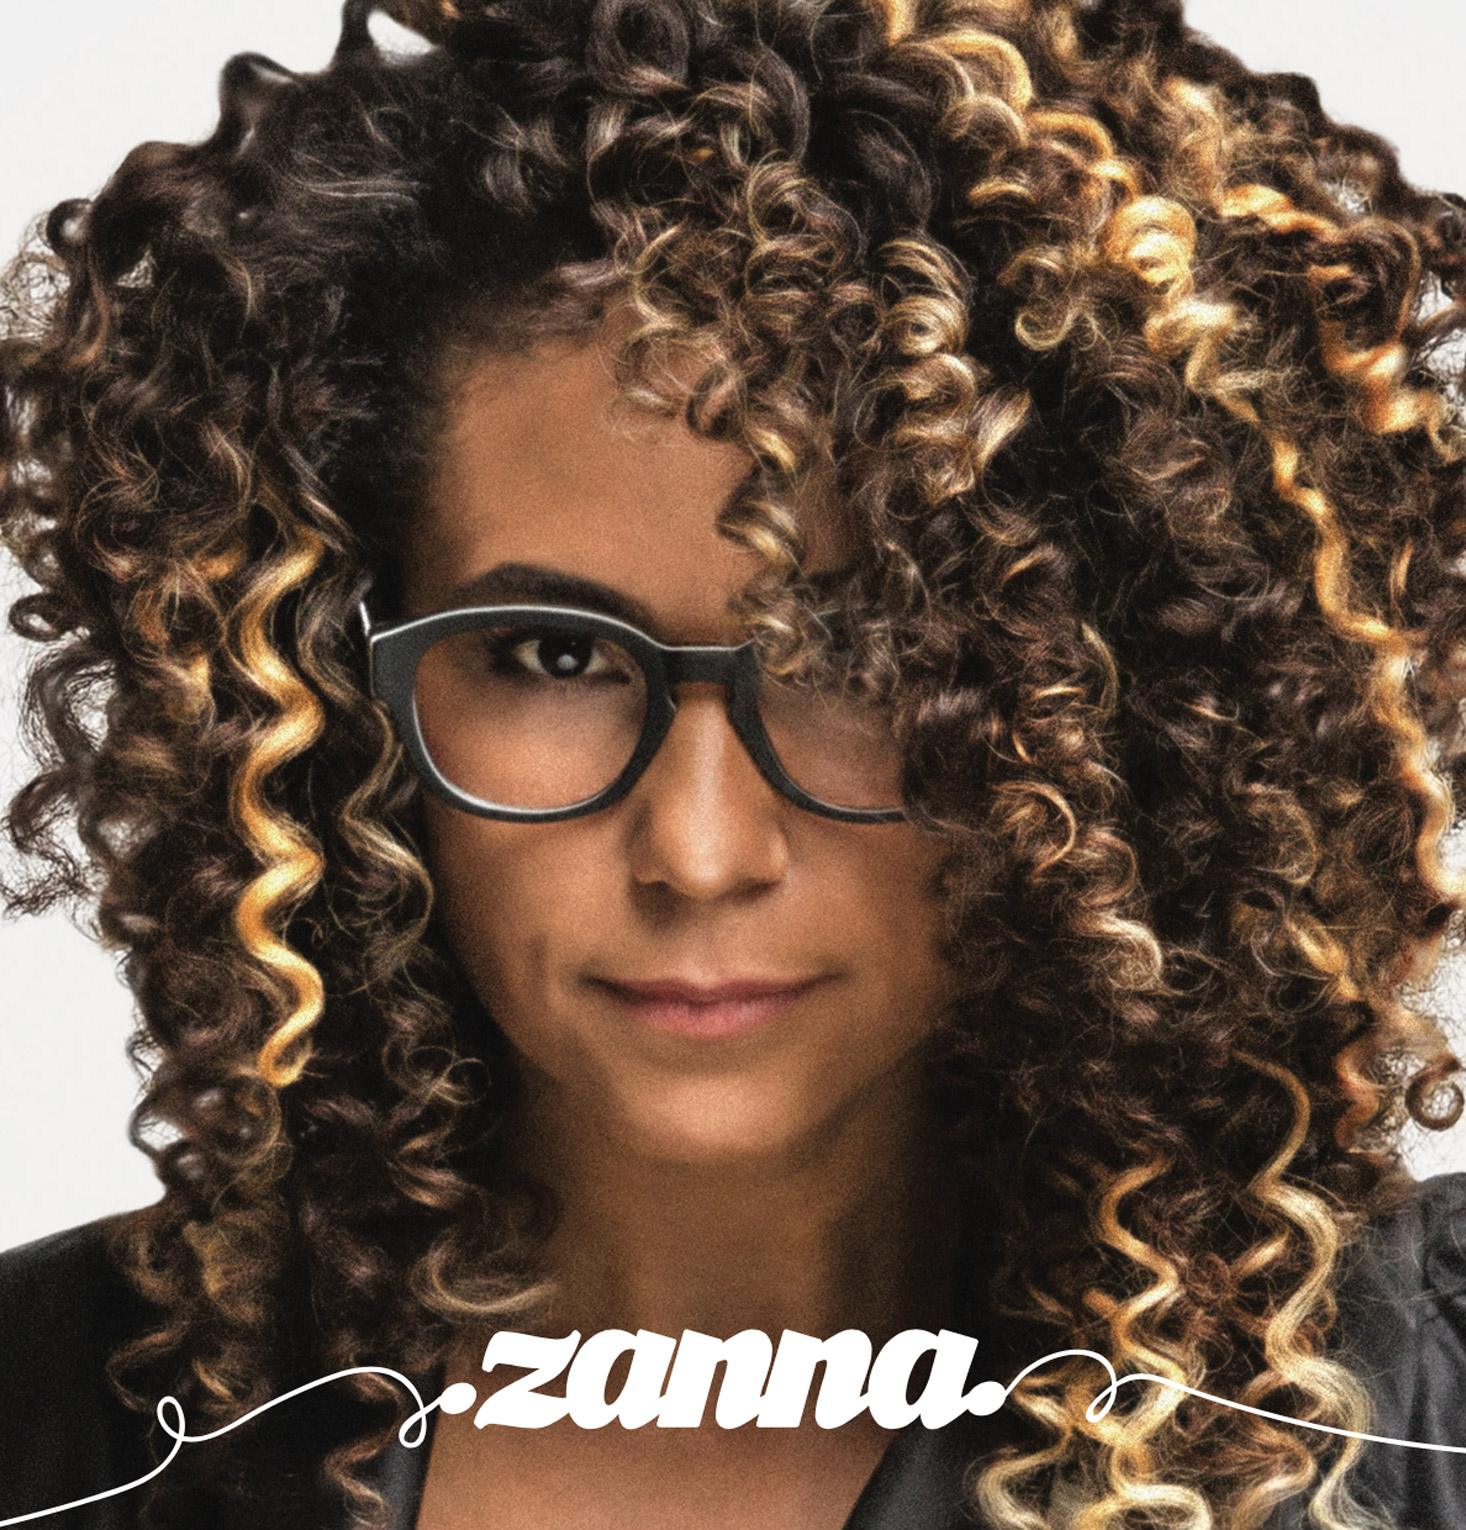 zanna_sobre-disco-zanna